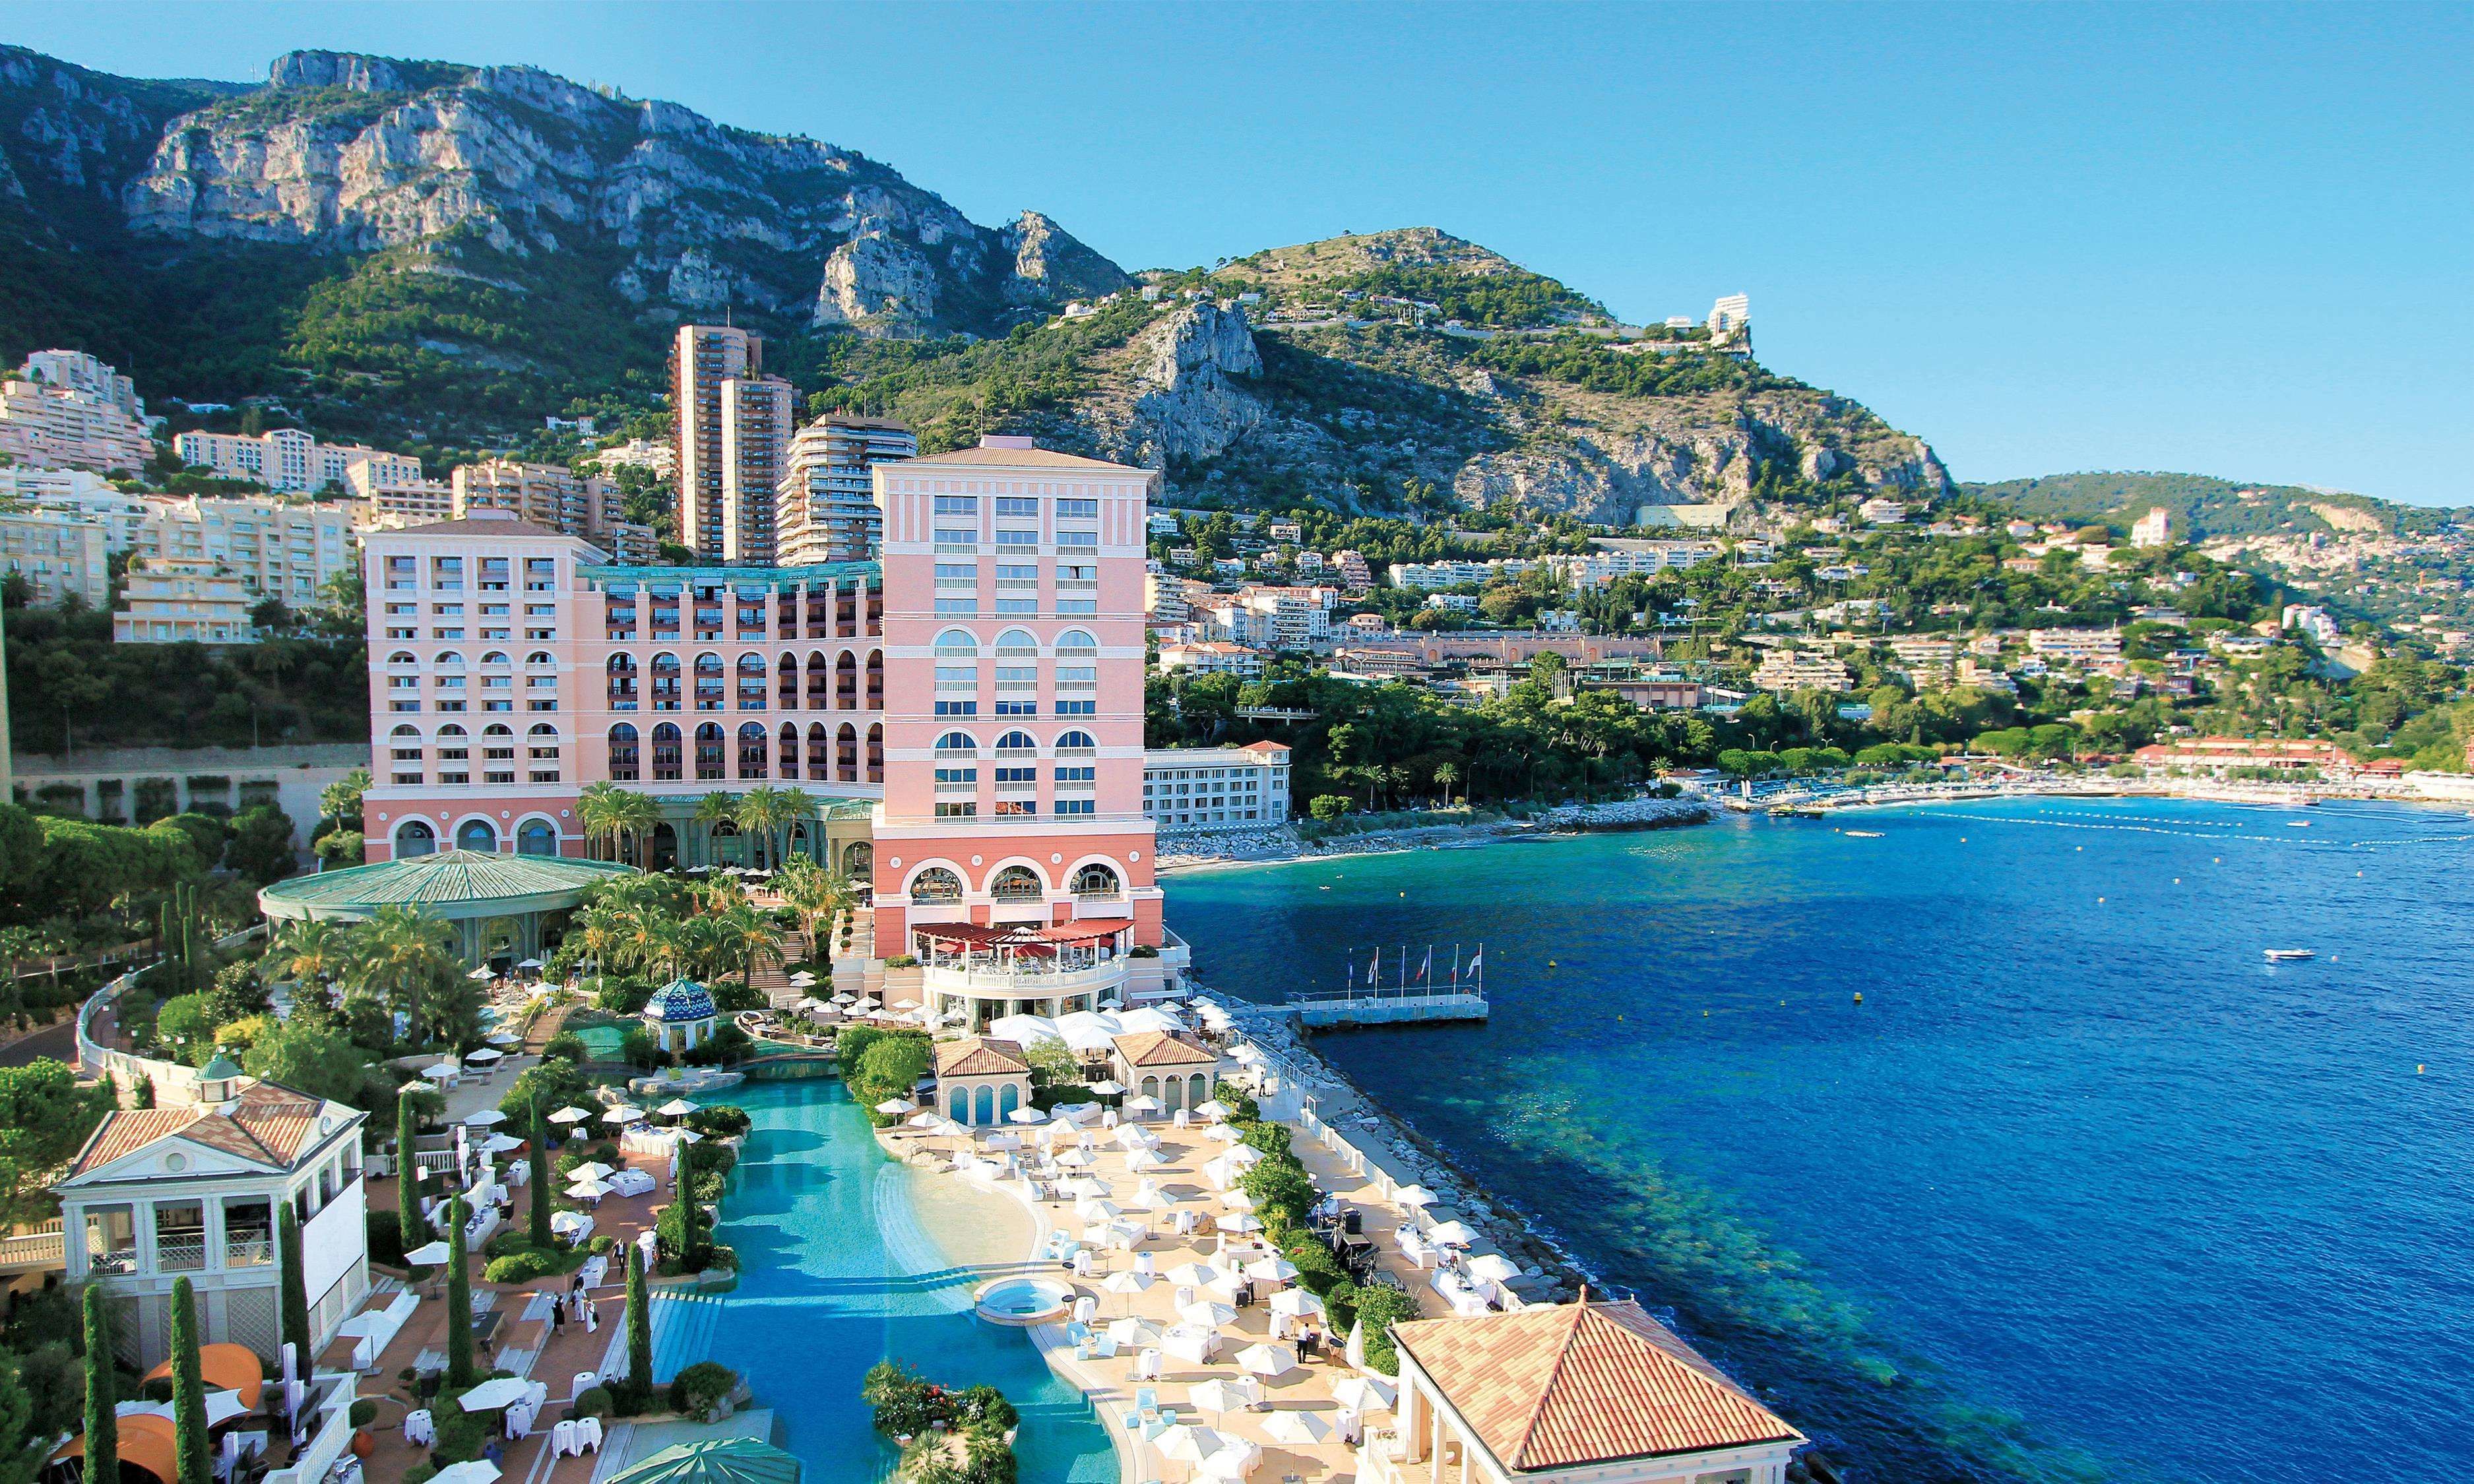 Monte Carlo Bay Hotel and Resort - 40 Avenue Princesse Grace, Monte Carlo, Monaco, MC